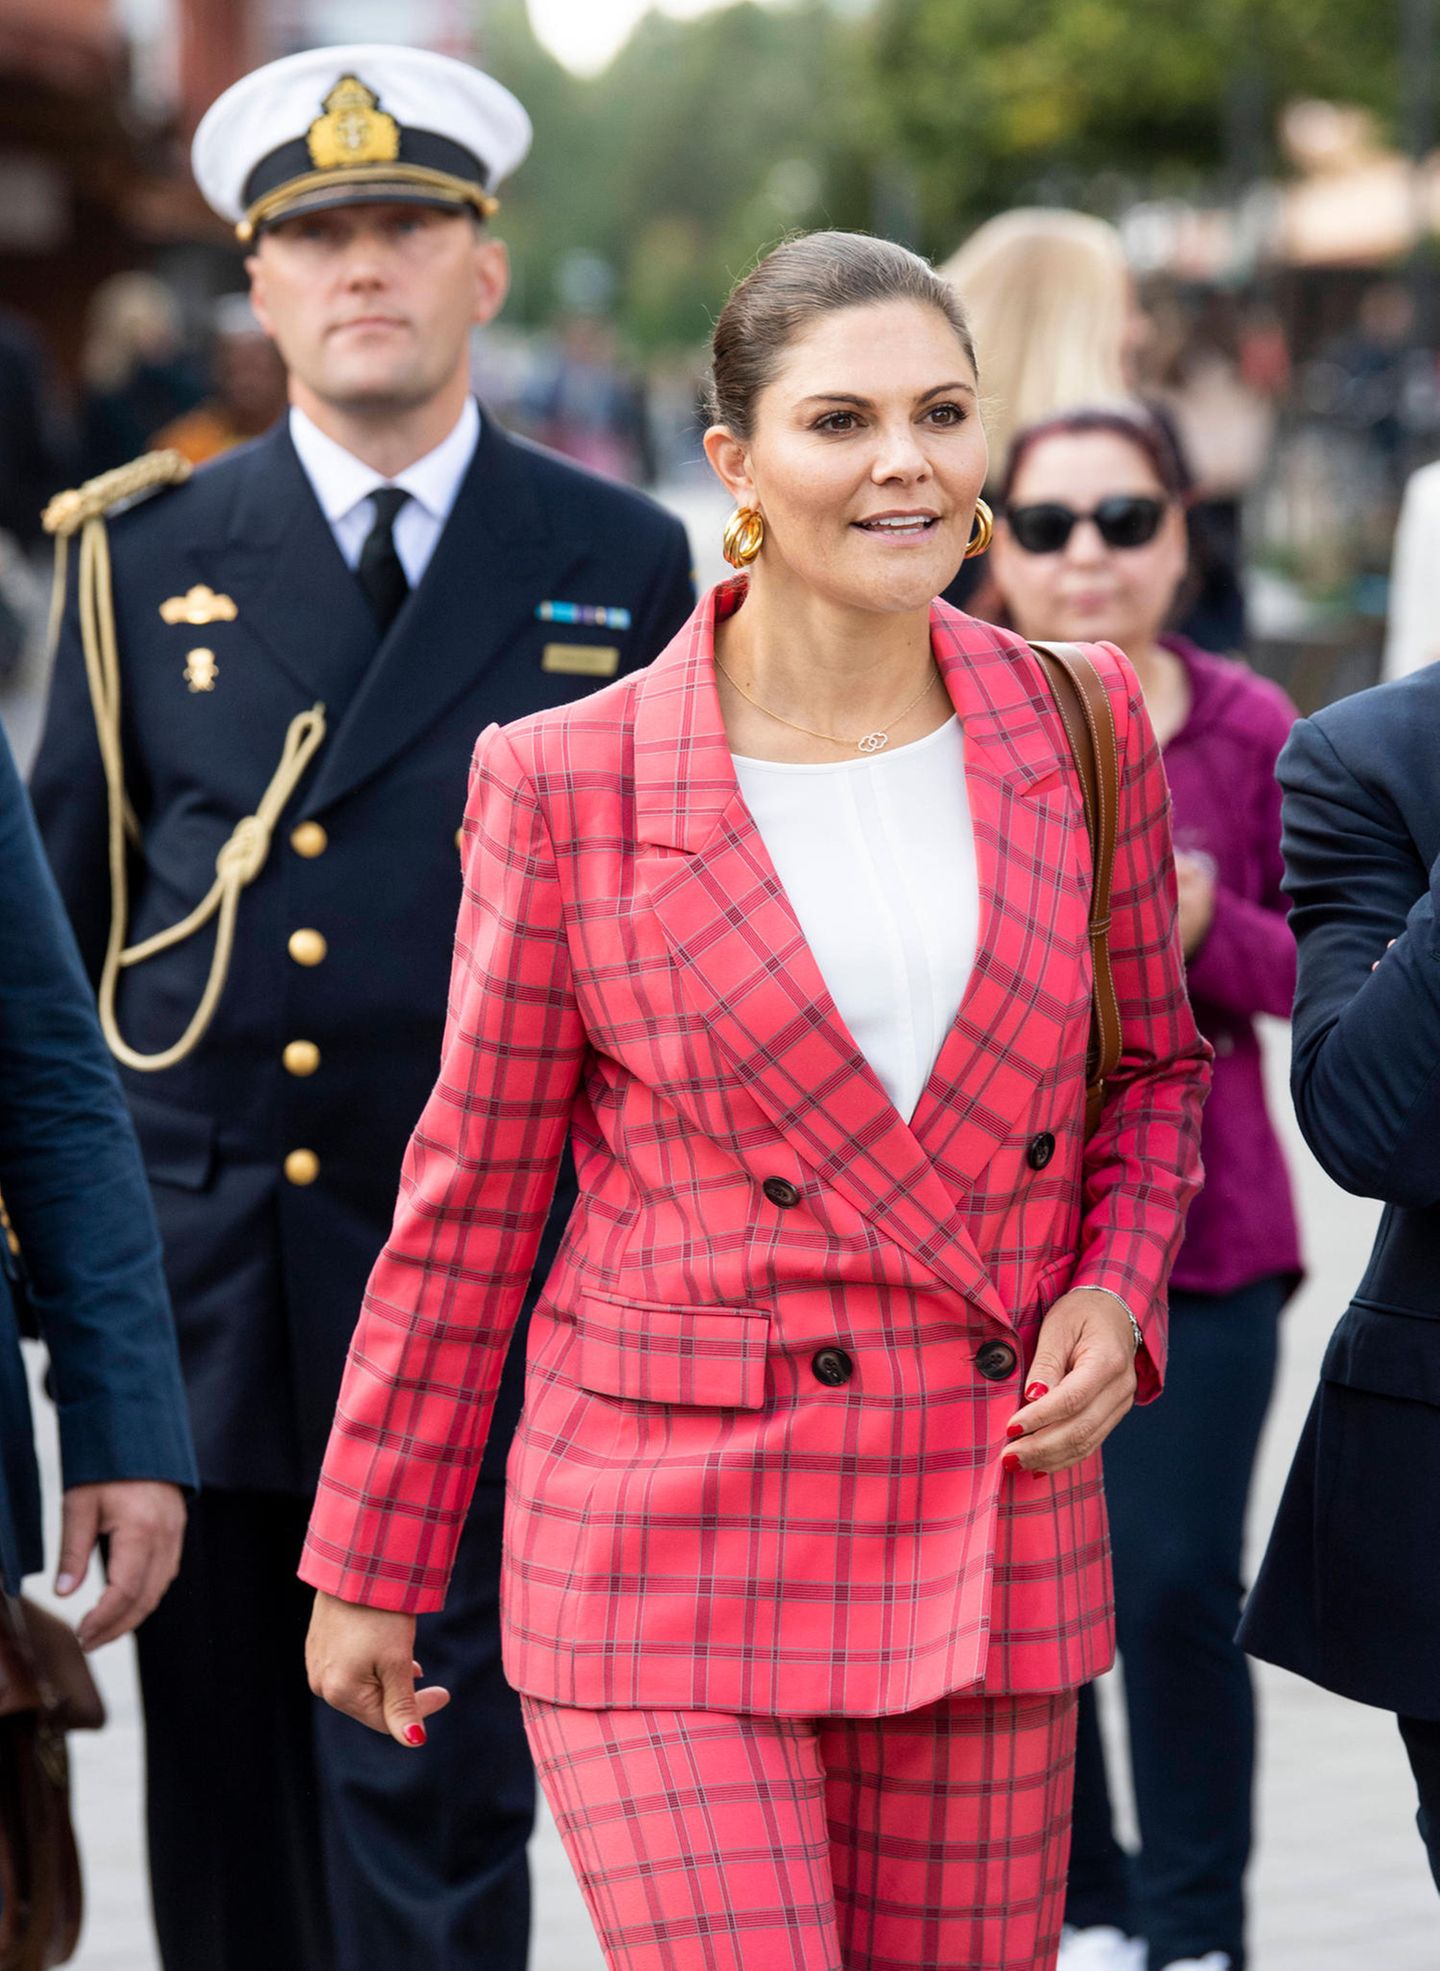 Von dezent bis knallig: Auch im pinken Power-Suit kann sich Victoria von Schweden sehen lassen. Mit ihrem Auftritt setzt sie definitiv ein Statement. Passend dazu sind nicht nur die goldenen Creolen, sondern auch ihre Nägel.